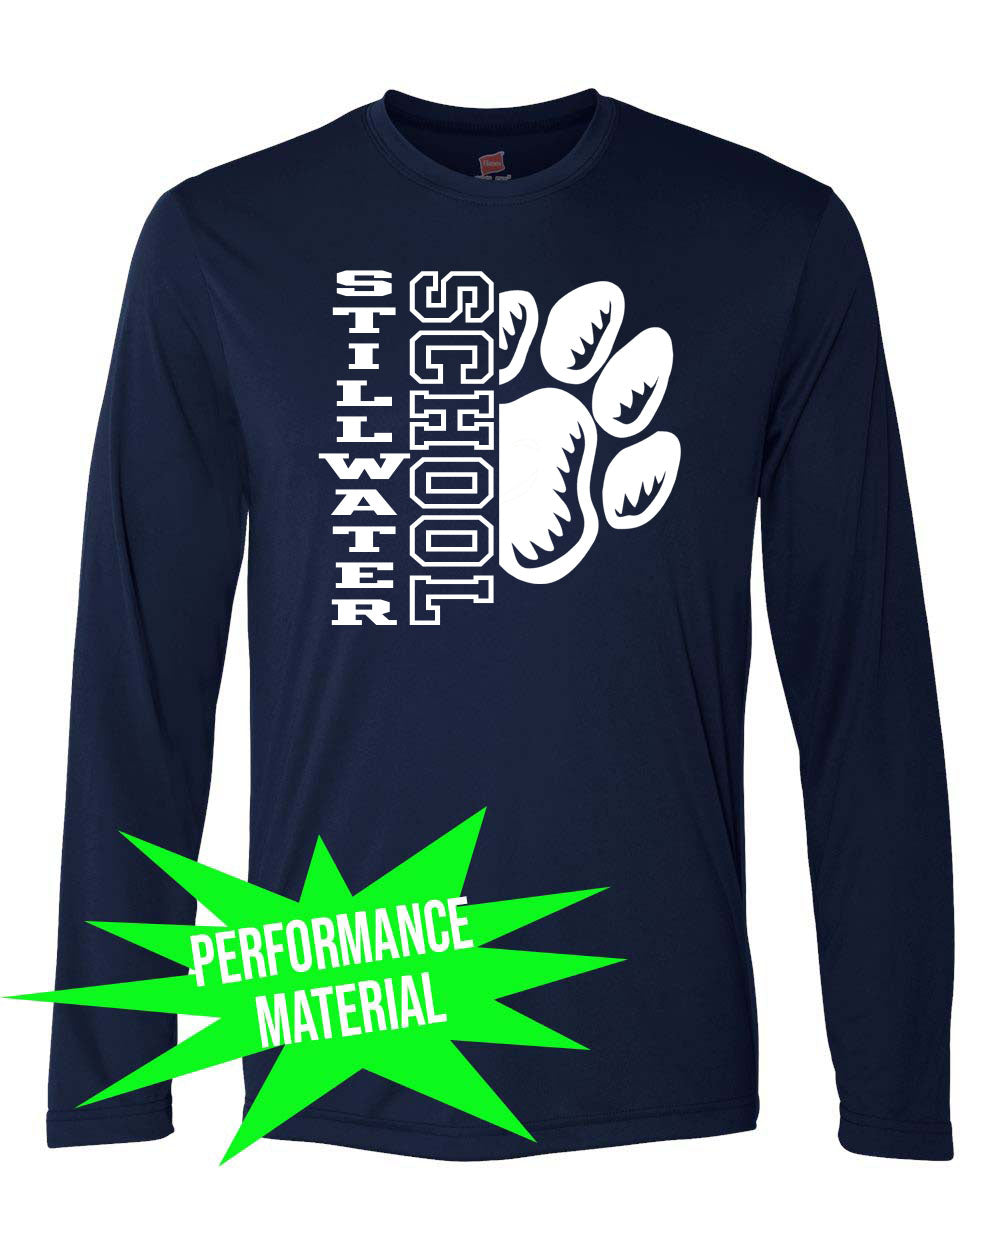 Stillwater School Performance Material Design 17 Long Sleeve Shirt